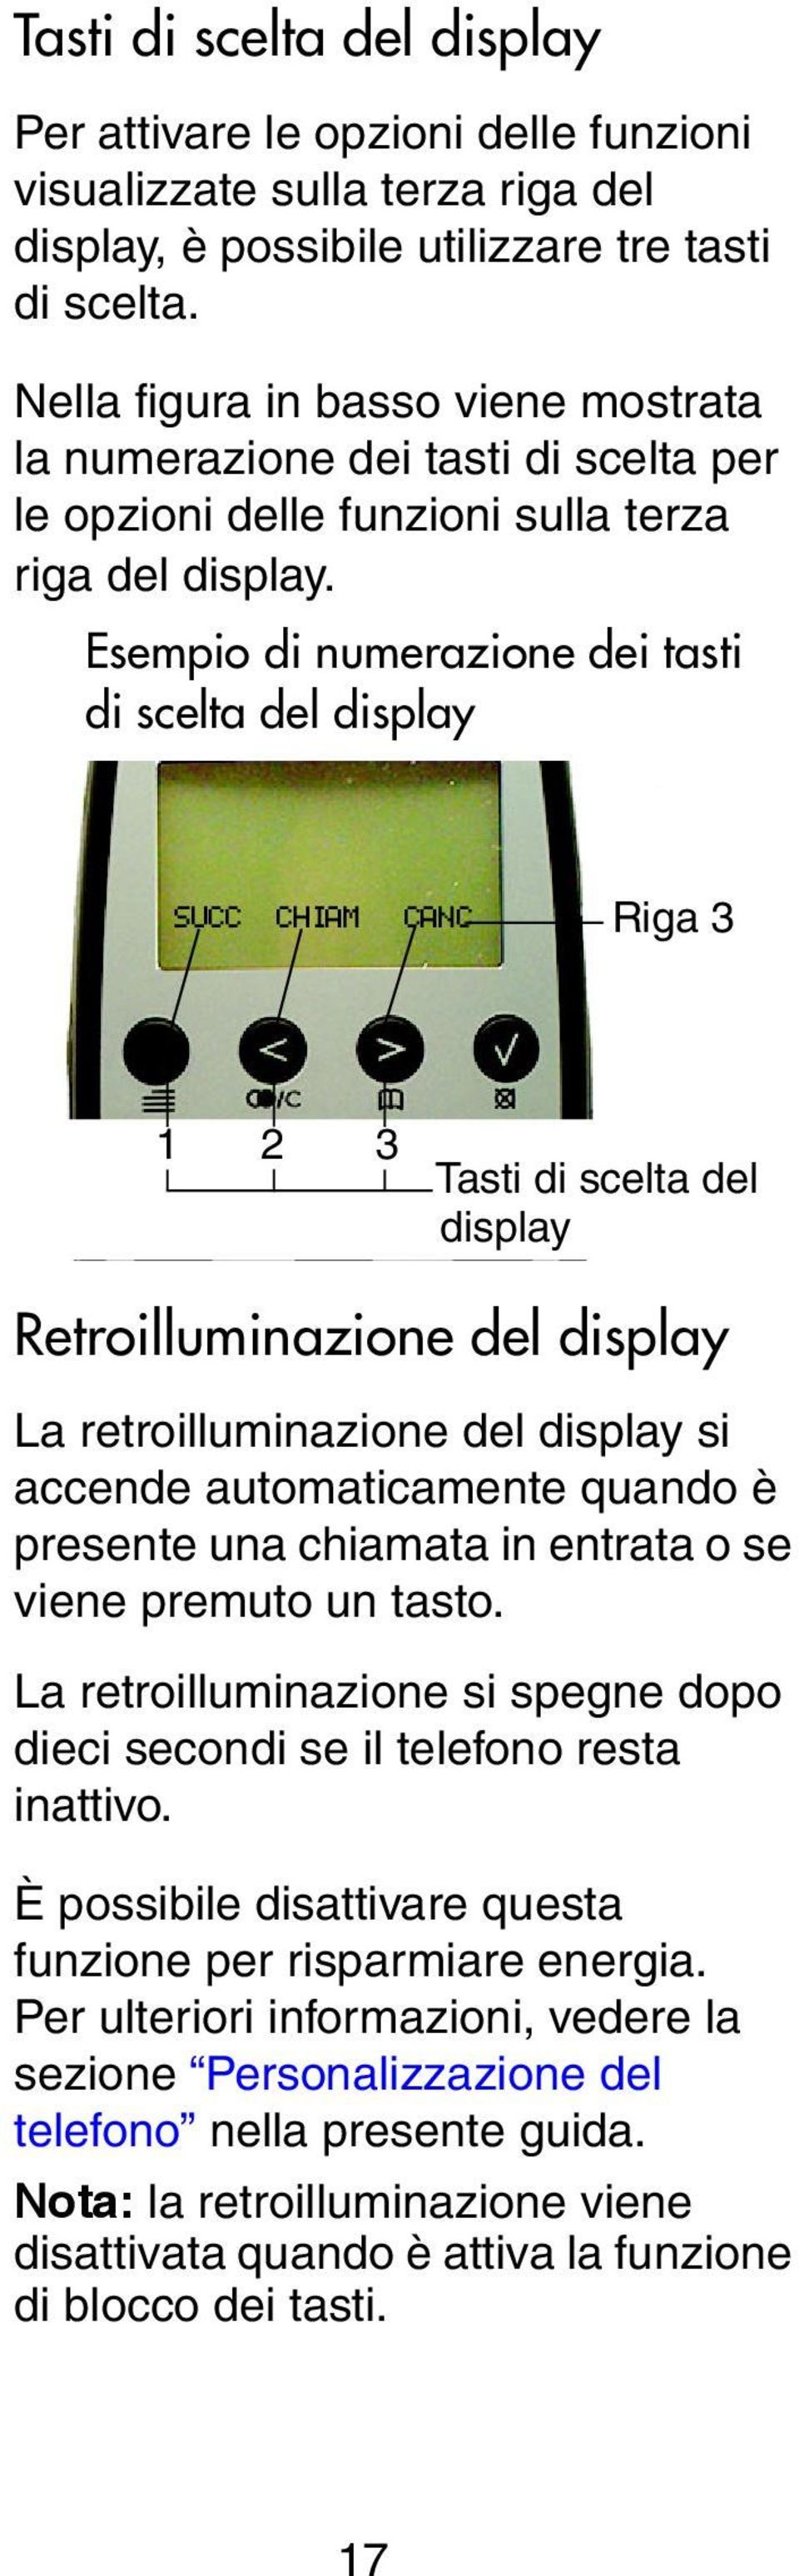 Esempio di numerazione dei tasti di scelta del display SUCC CHIAM CANC Tasti Riga di 3 s 1 2 3 Tasti di scelta del display Retroilluminazione del display La retroilluminazione del display si accende